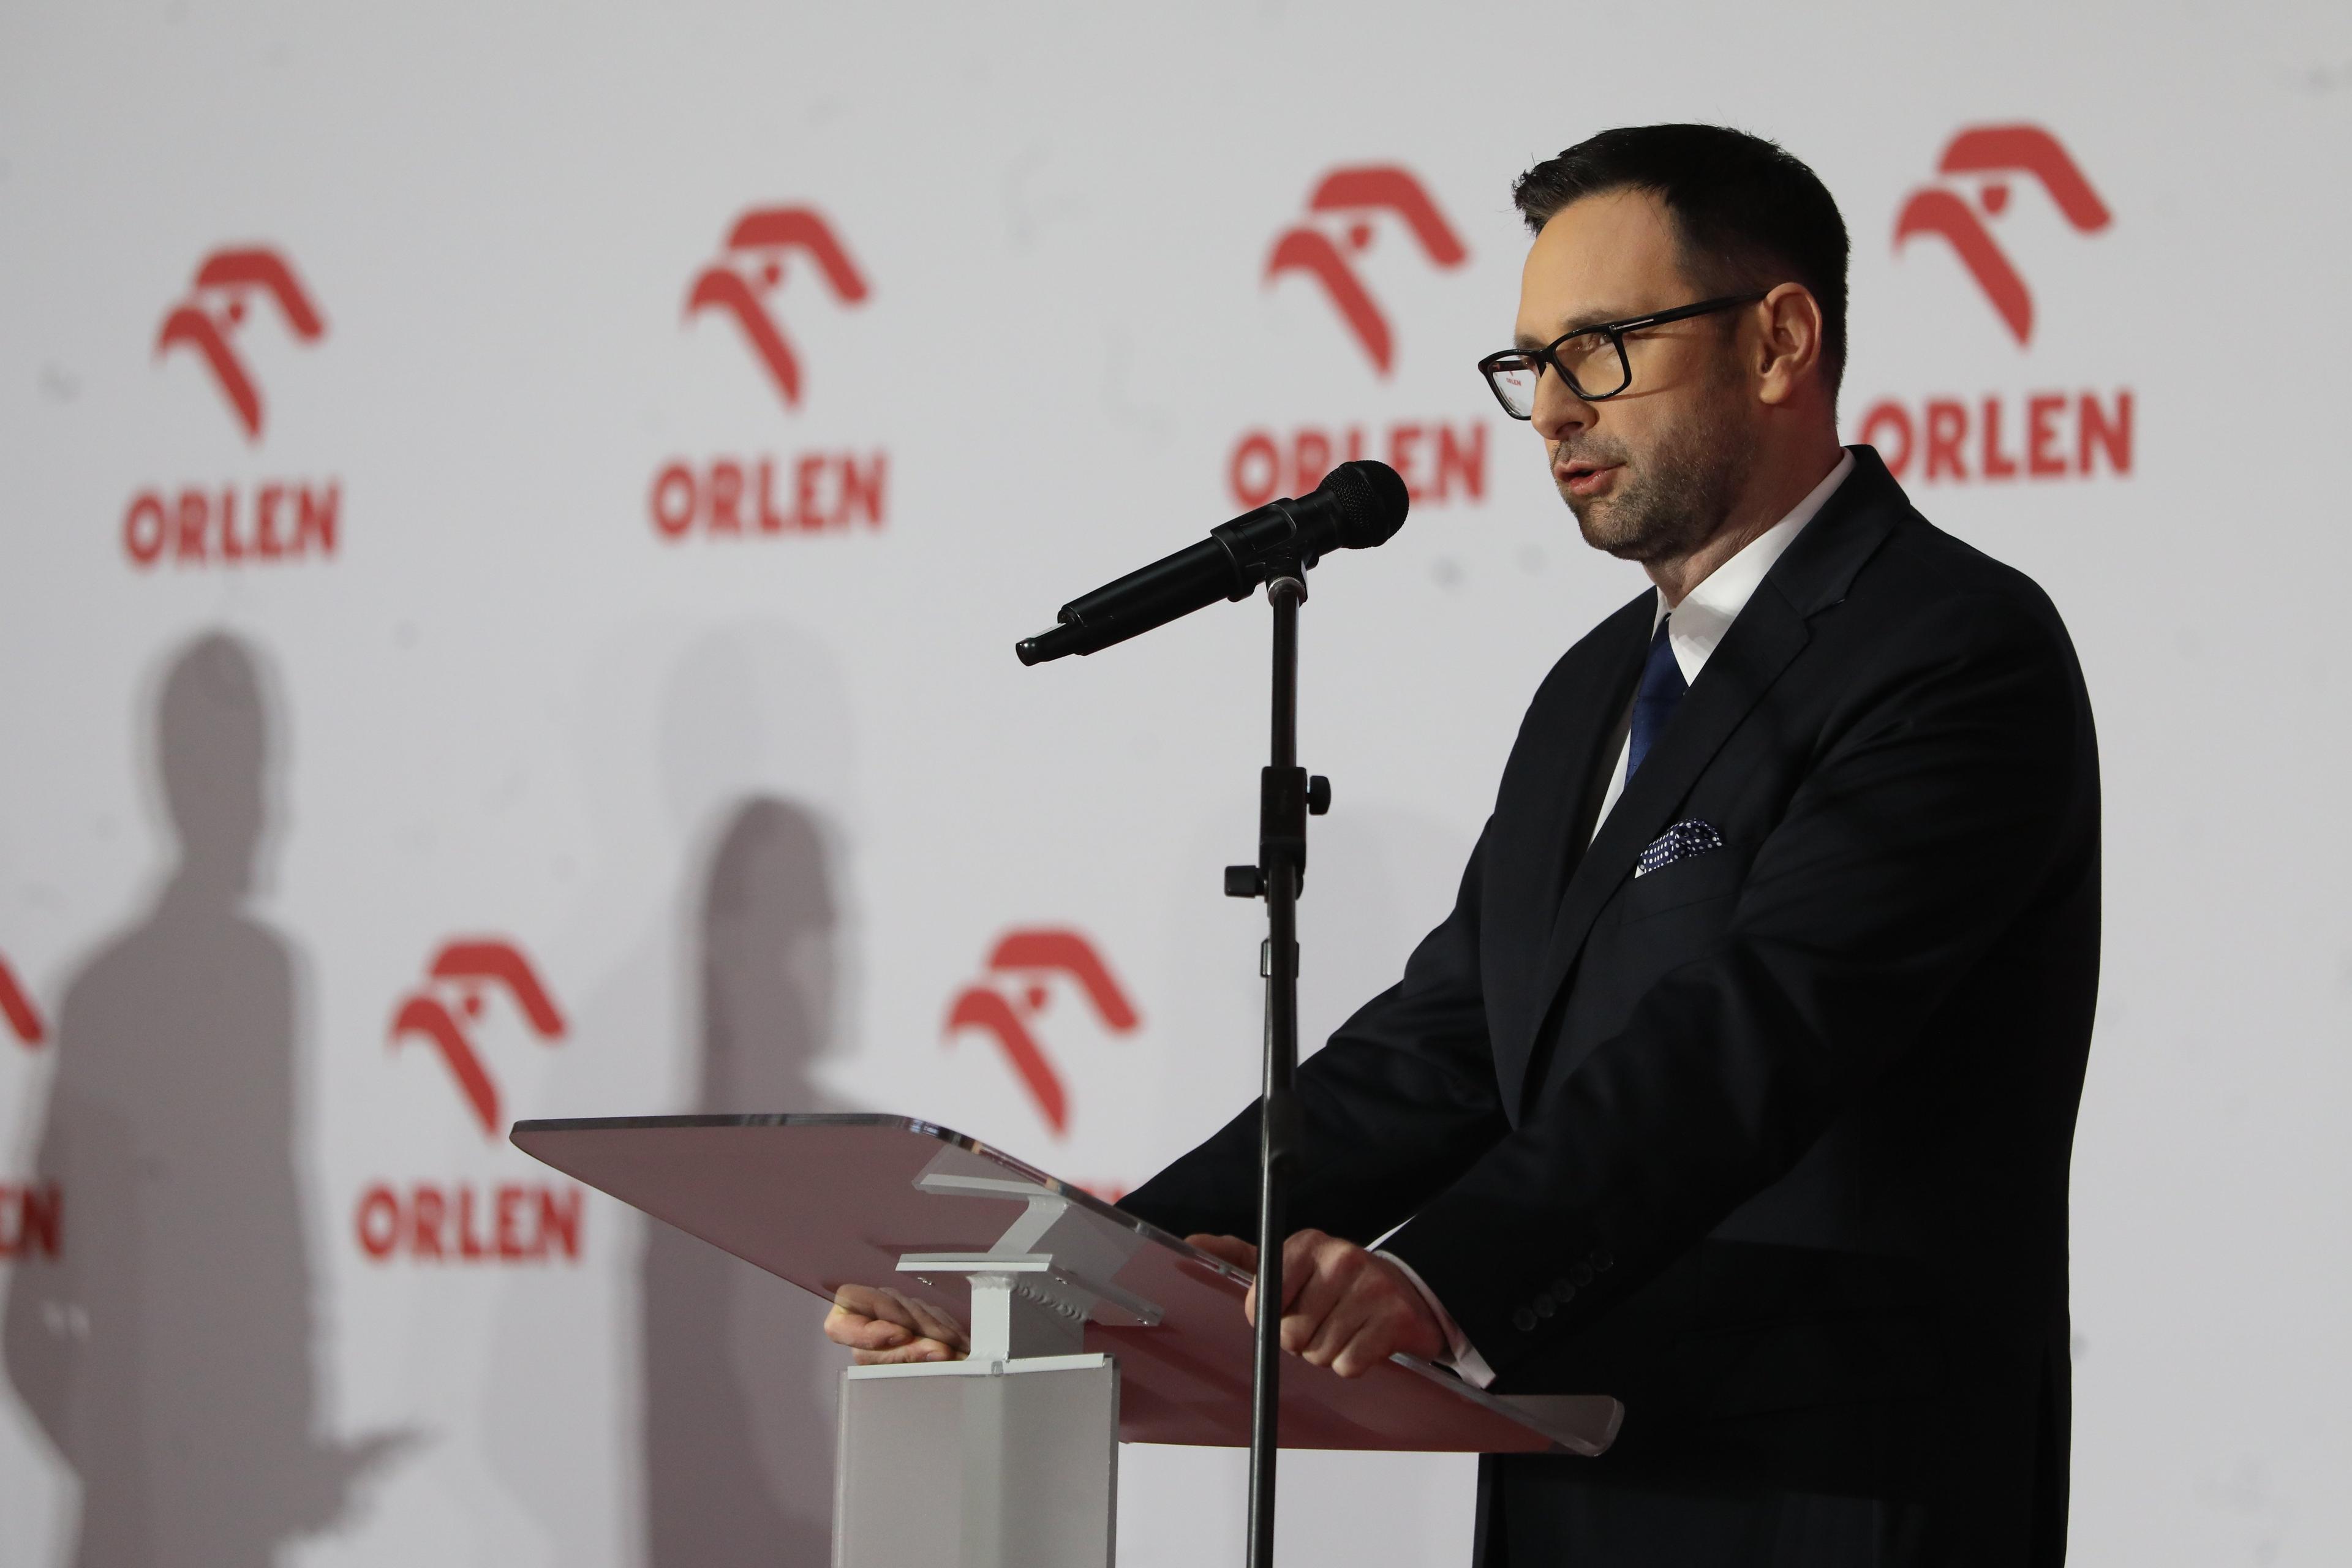 prezes Orlenu Daniel Obajtek przemawia na tle ścianki z logiem koncernu